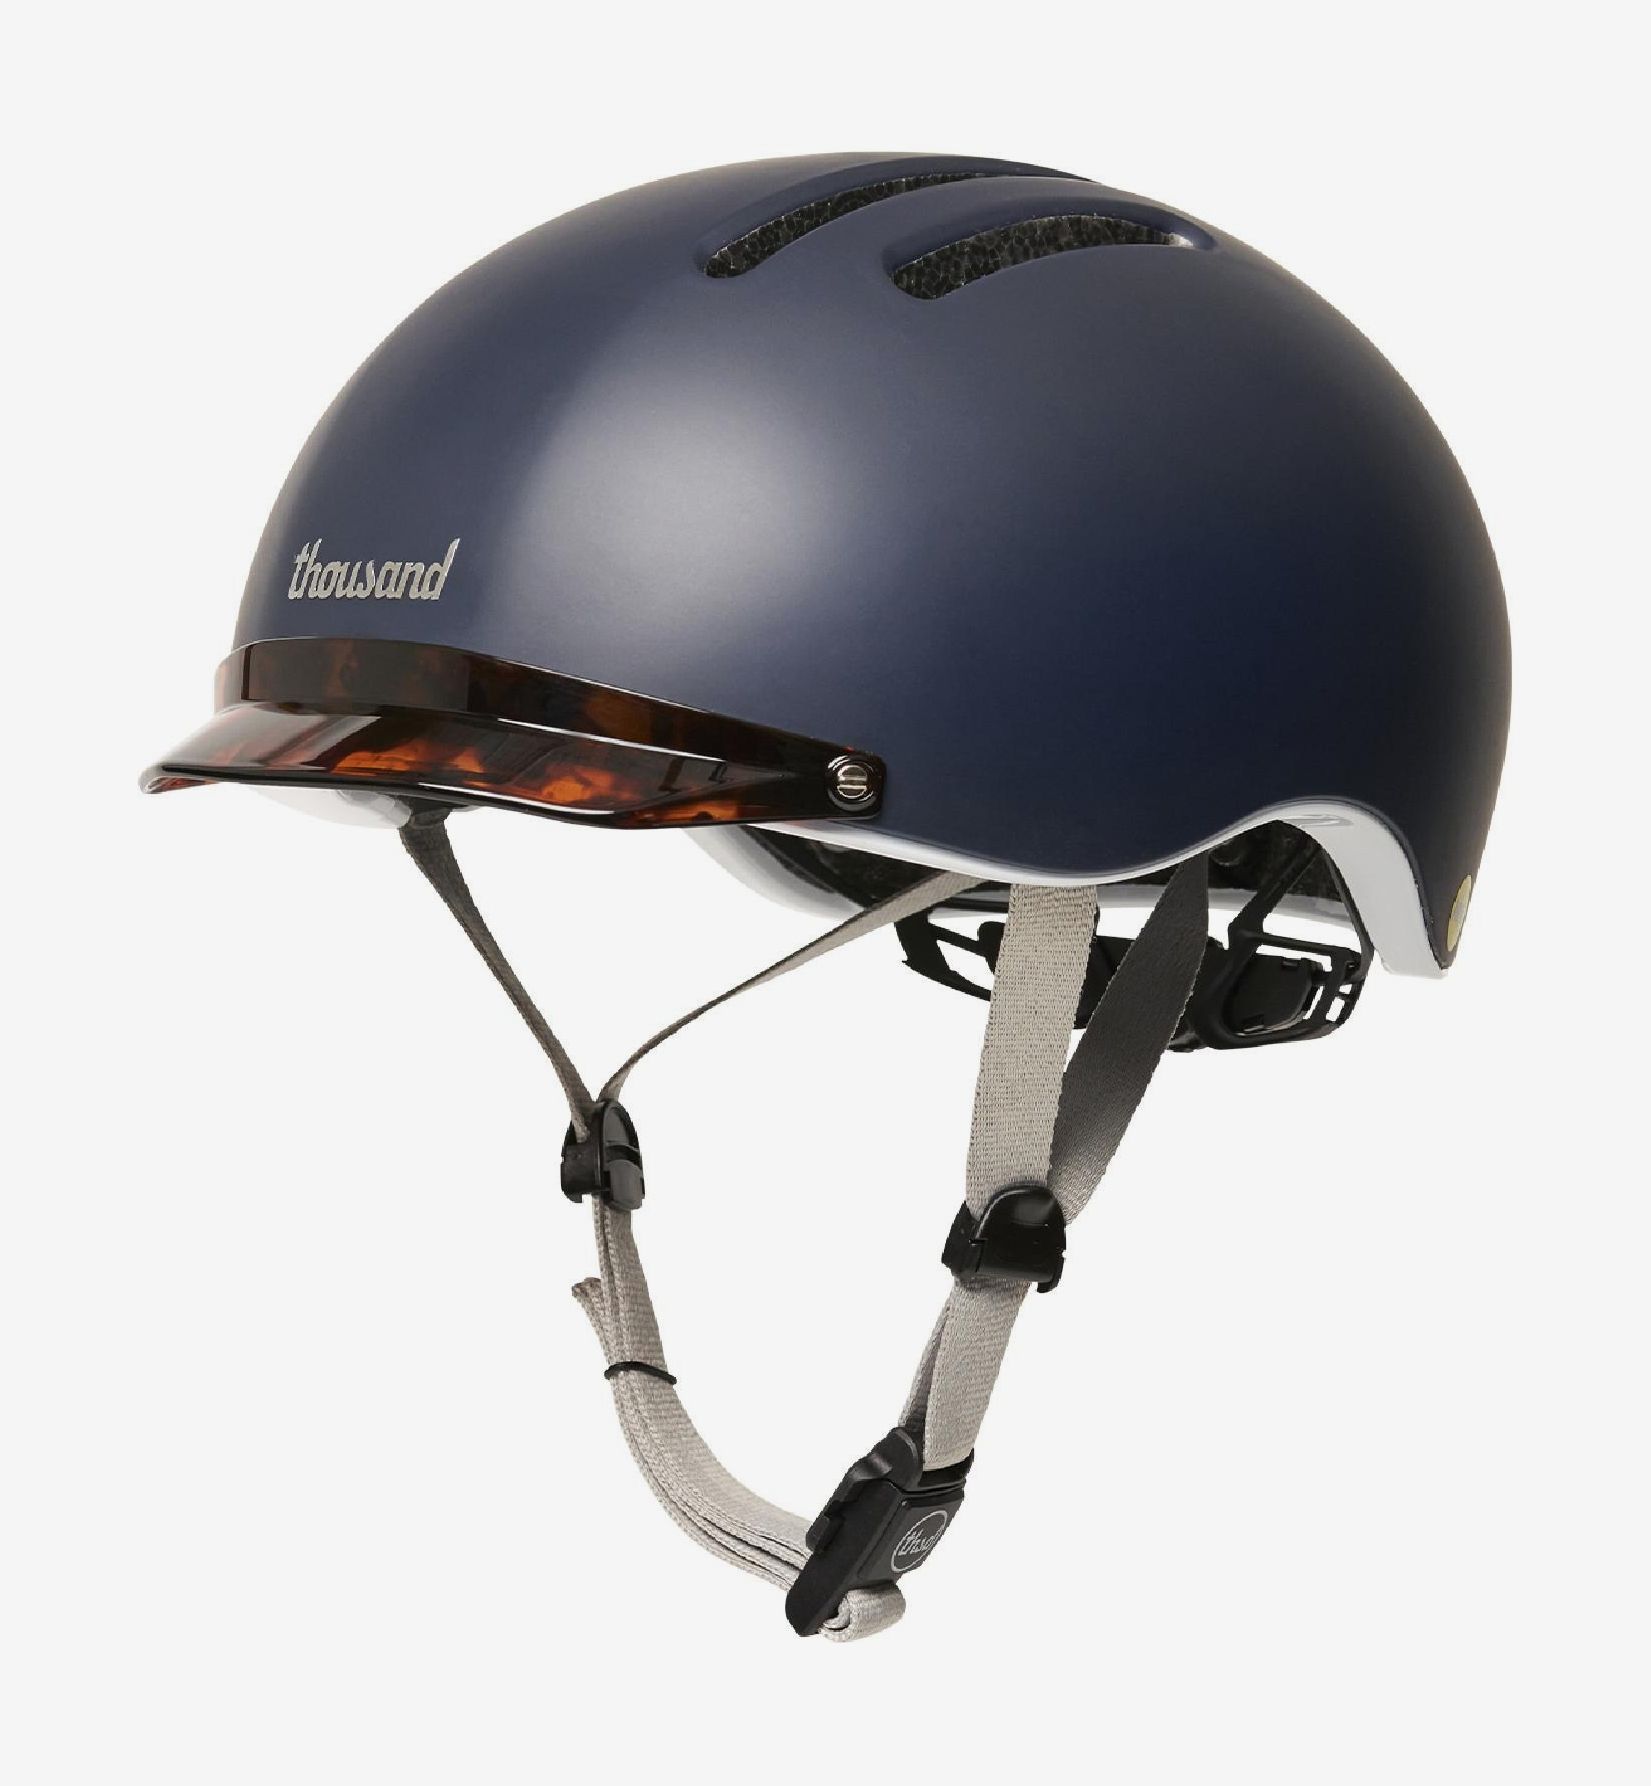 Top Bicycle Helmets | tunersread.com